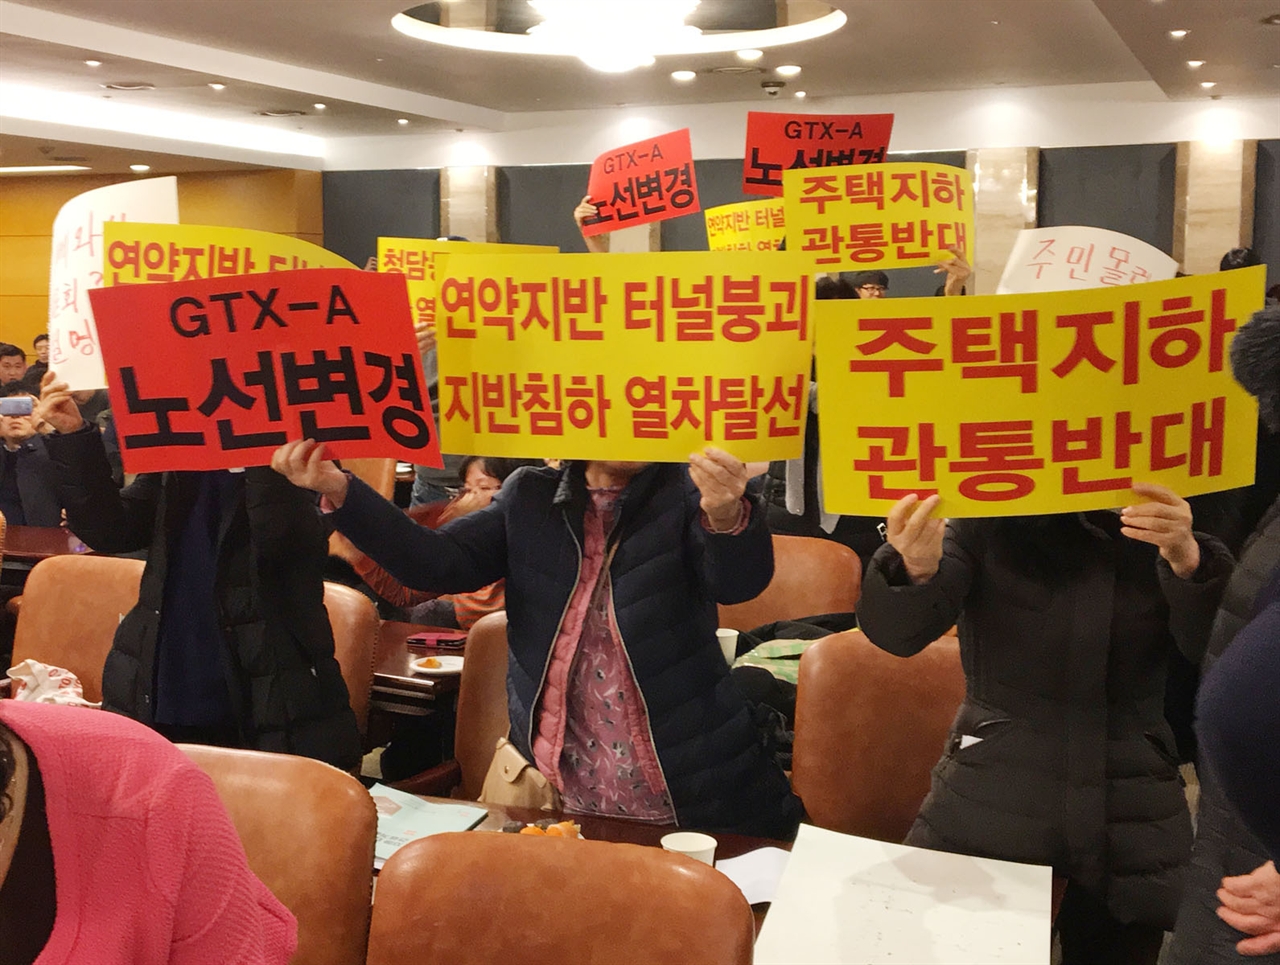 31일, 지하 대심도 건설토론회가 GTX-A 노선변경 철회를 요구하는 주민들의 반대에 부딪혀 무산됐다.